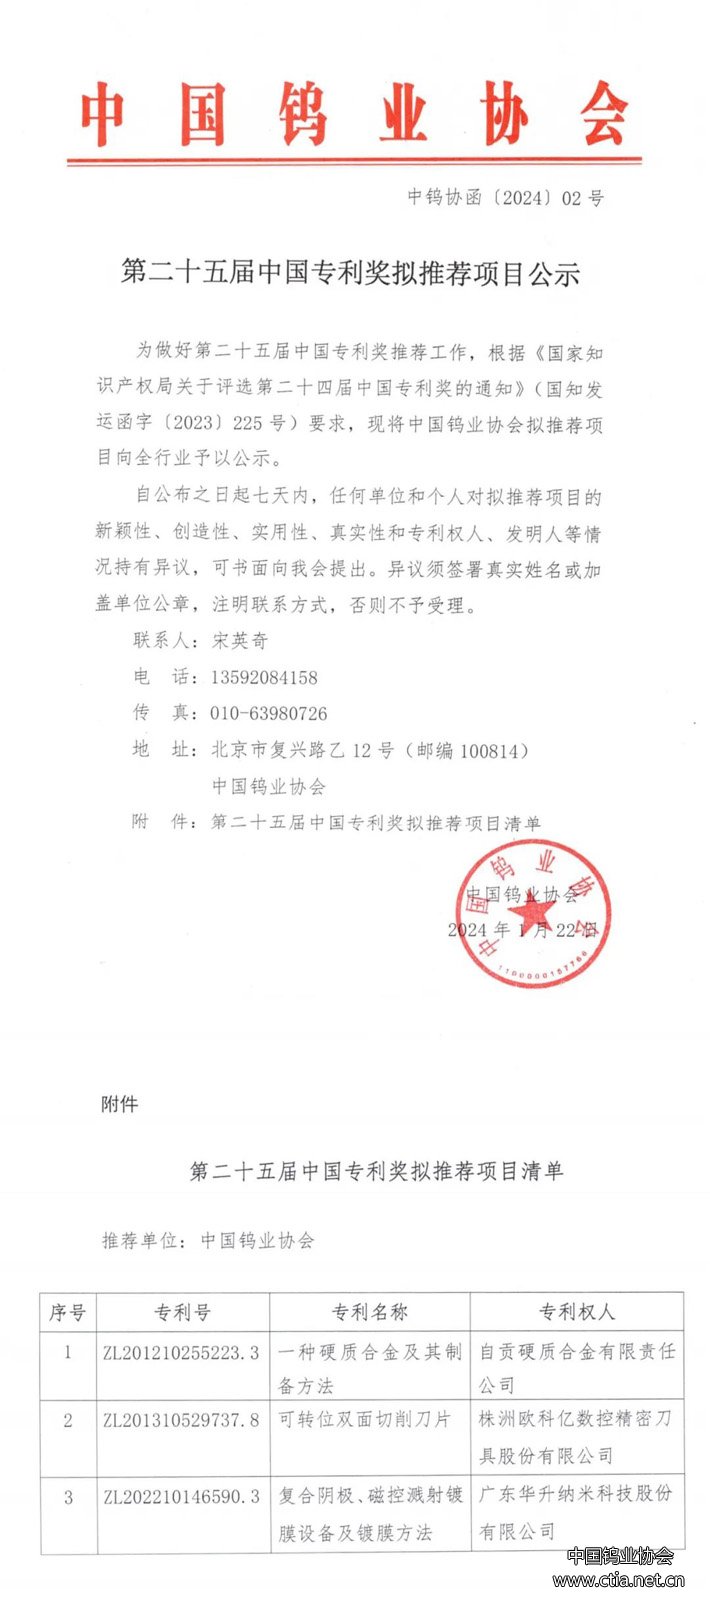 第二十五届中国专利奖拟推荐项目公示